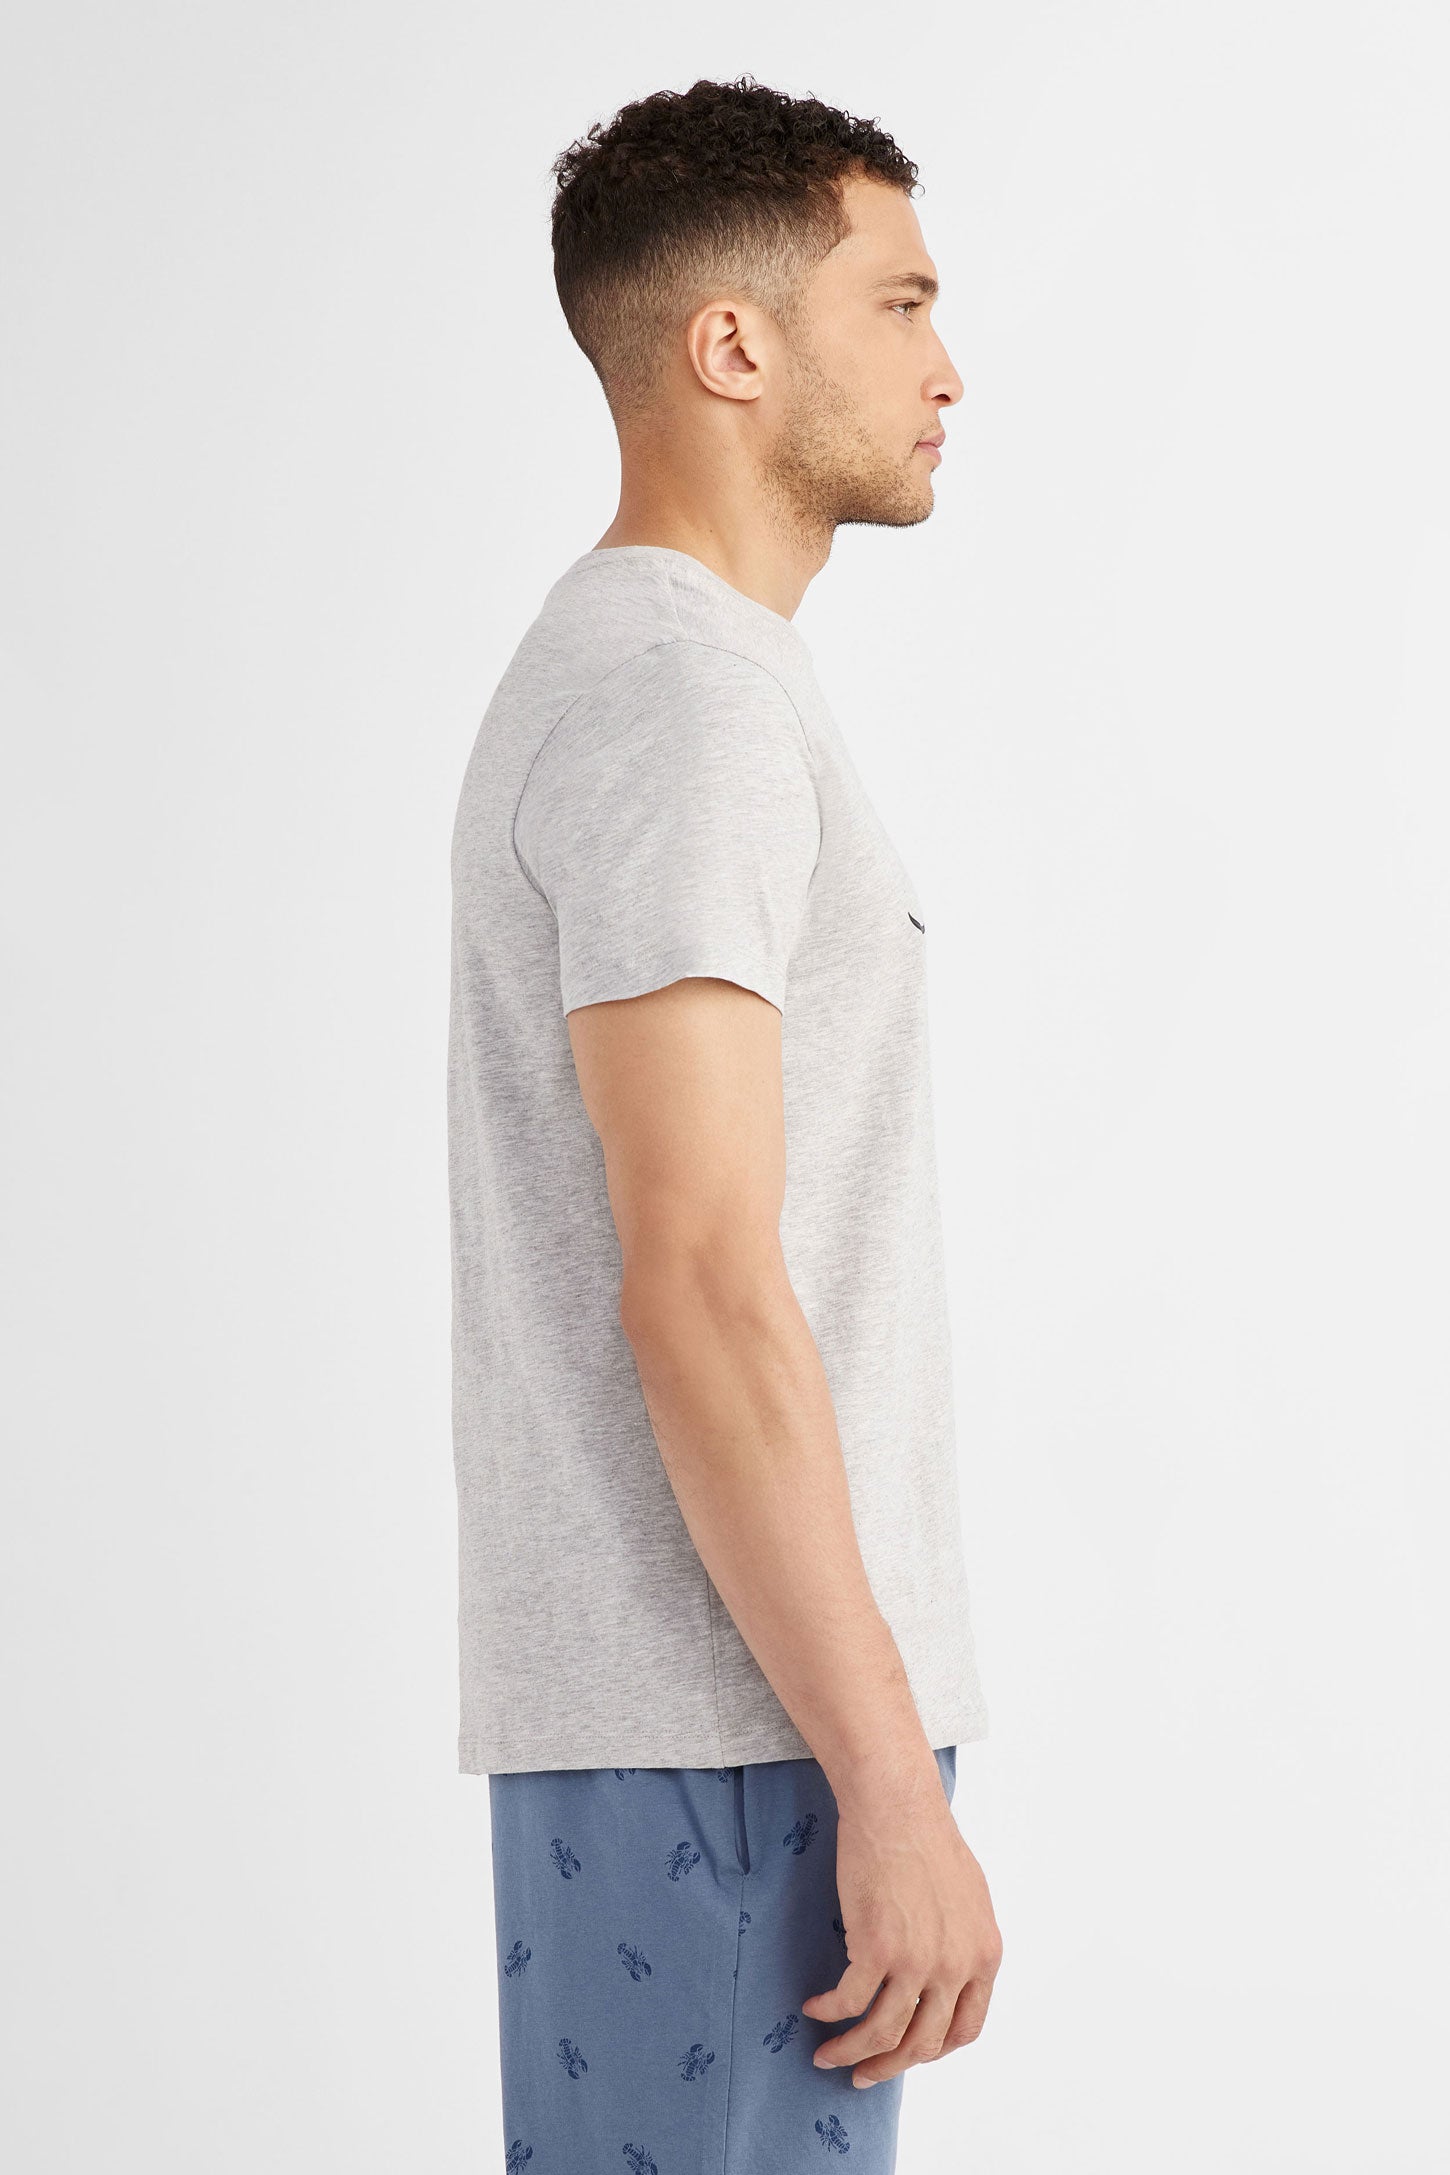 T-shirt pyjama imprimé en coton, 2/40$ - Homme && GRIS MIXTE